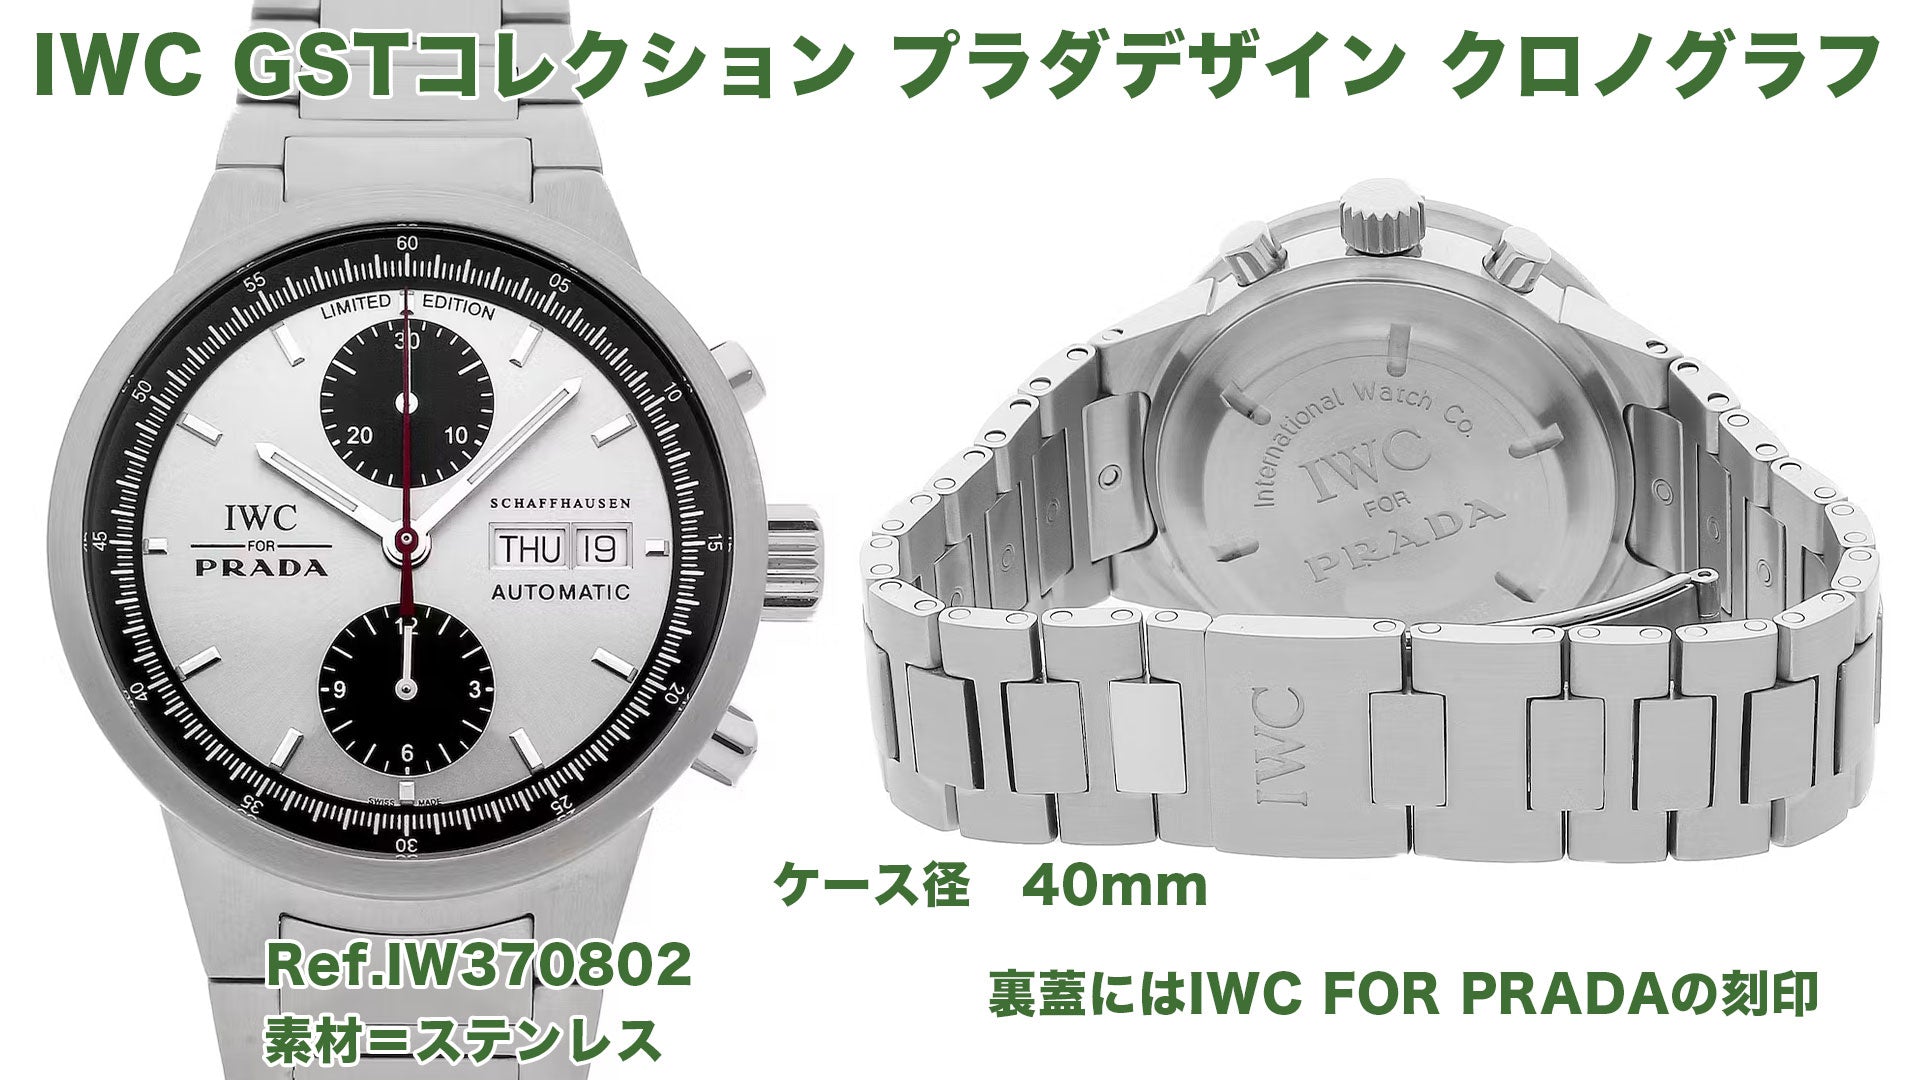 IWC GST Chronograph Prada Design IW370802